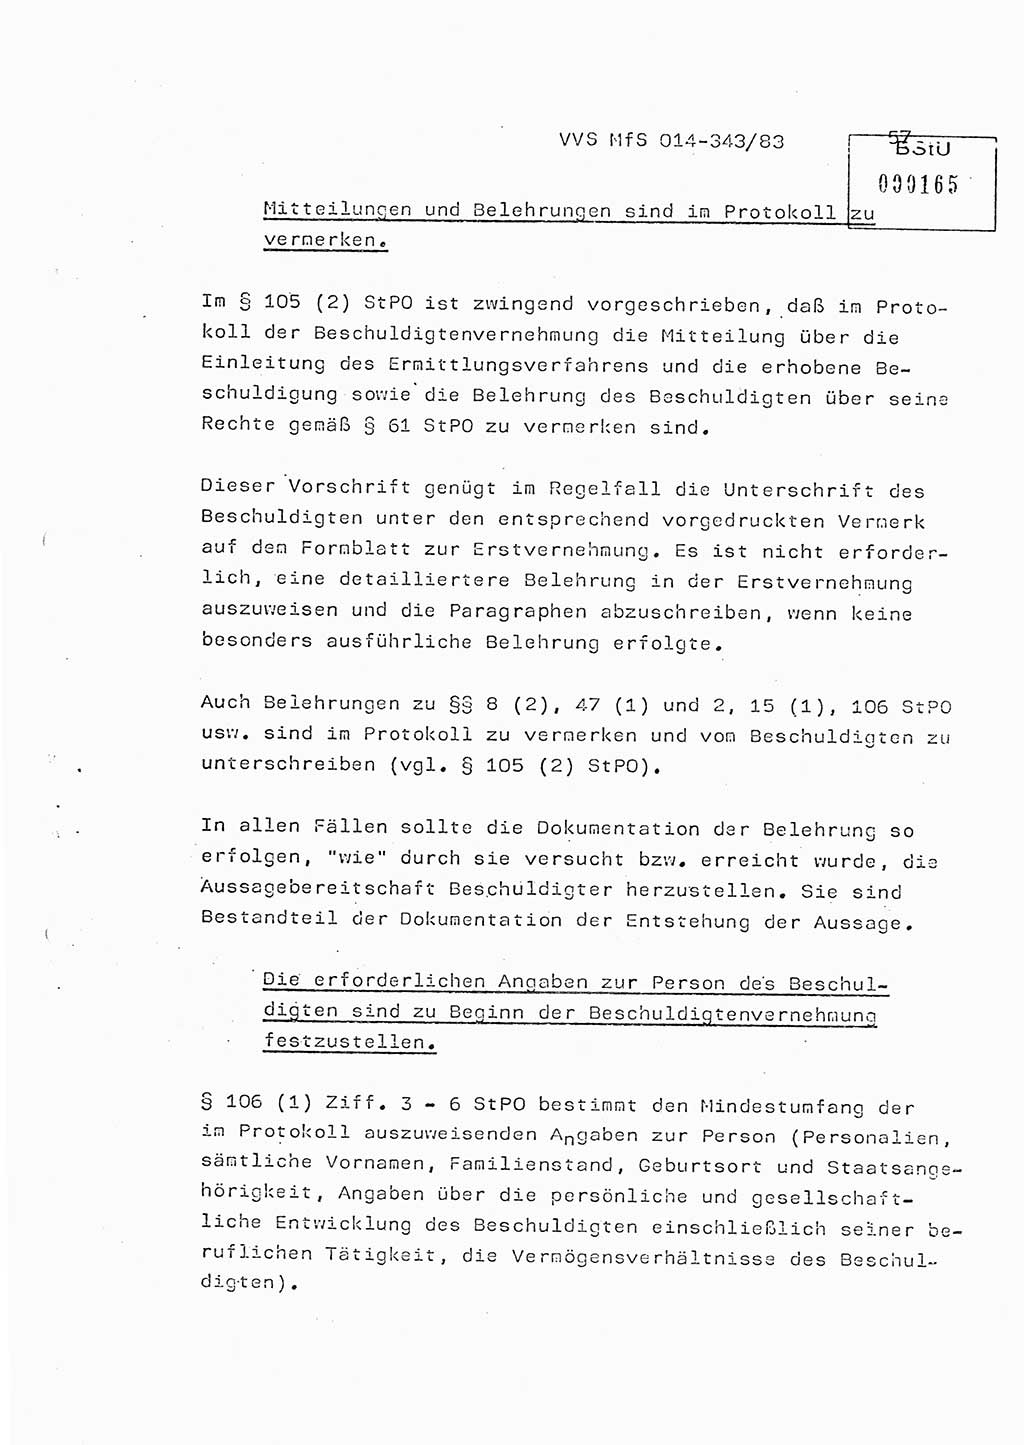 Lektion Ministerium für Staatssicherheit (MfS) [Deutsche Demokratische Republik (DDR)], Hauptabteilung (HA) Ⅸ, Vertrauliche Verschlußsache (VVS) o014-343/83, Berlin 1983, Seite 57 (Lekt. MfS DDR HA Ⅸ VVS o014-343/83 1983, S. 57)